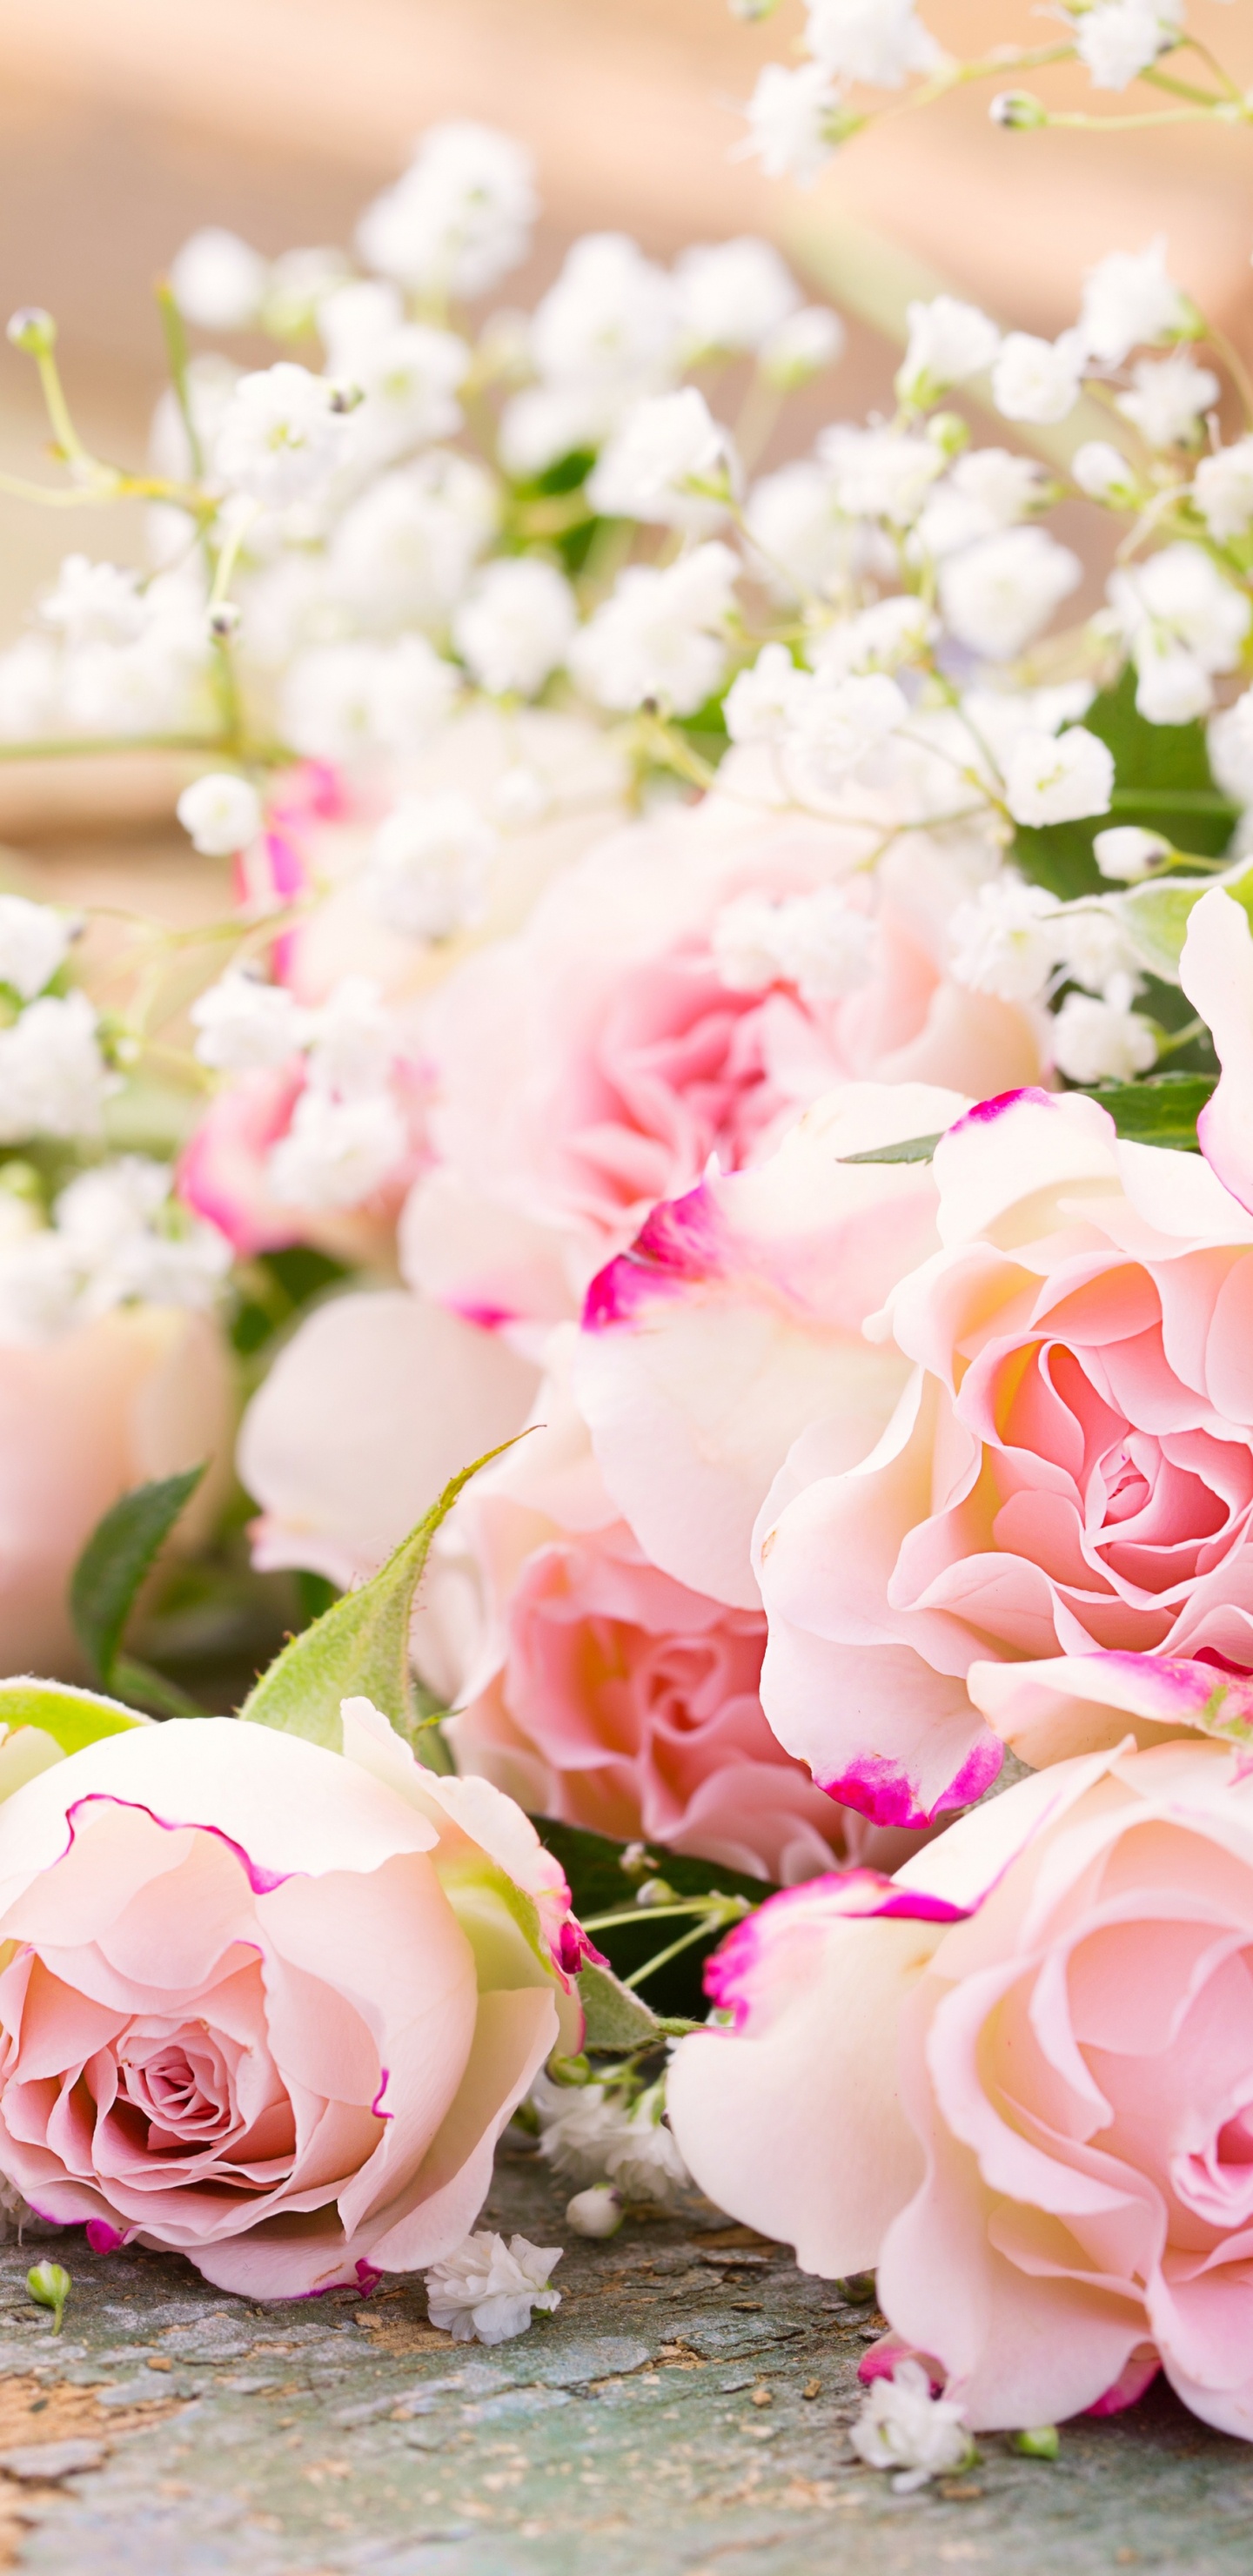 玫瑰花园, 粉红色, 花安排, 花卉设计, 切花 壁纸 1440x2960 允许